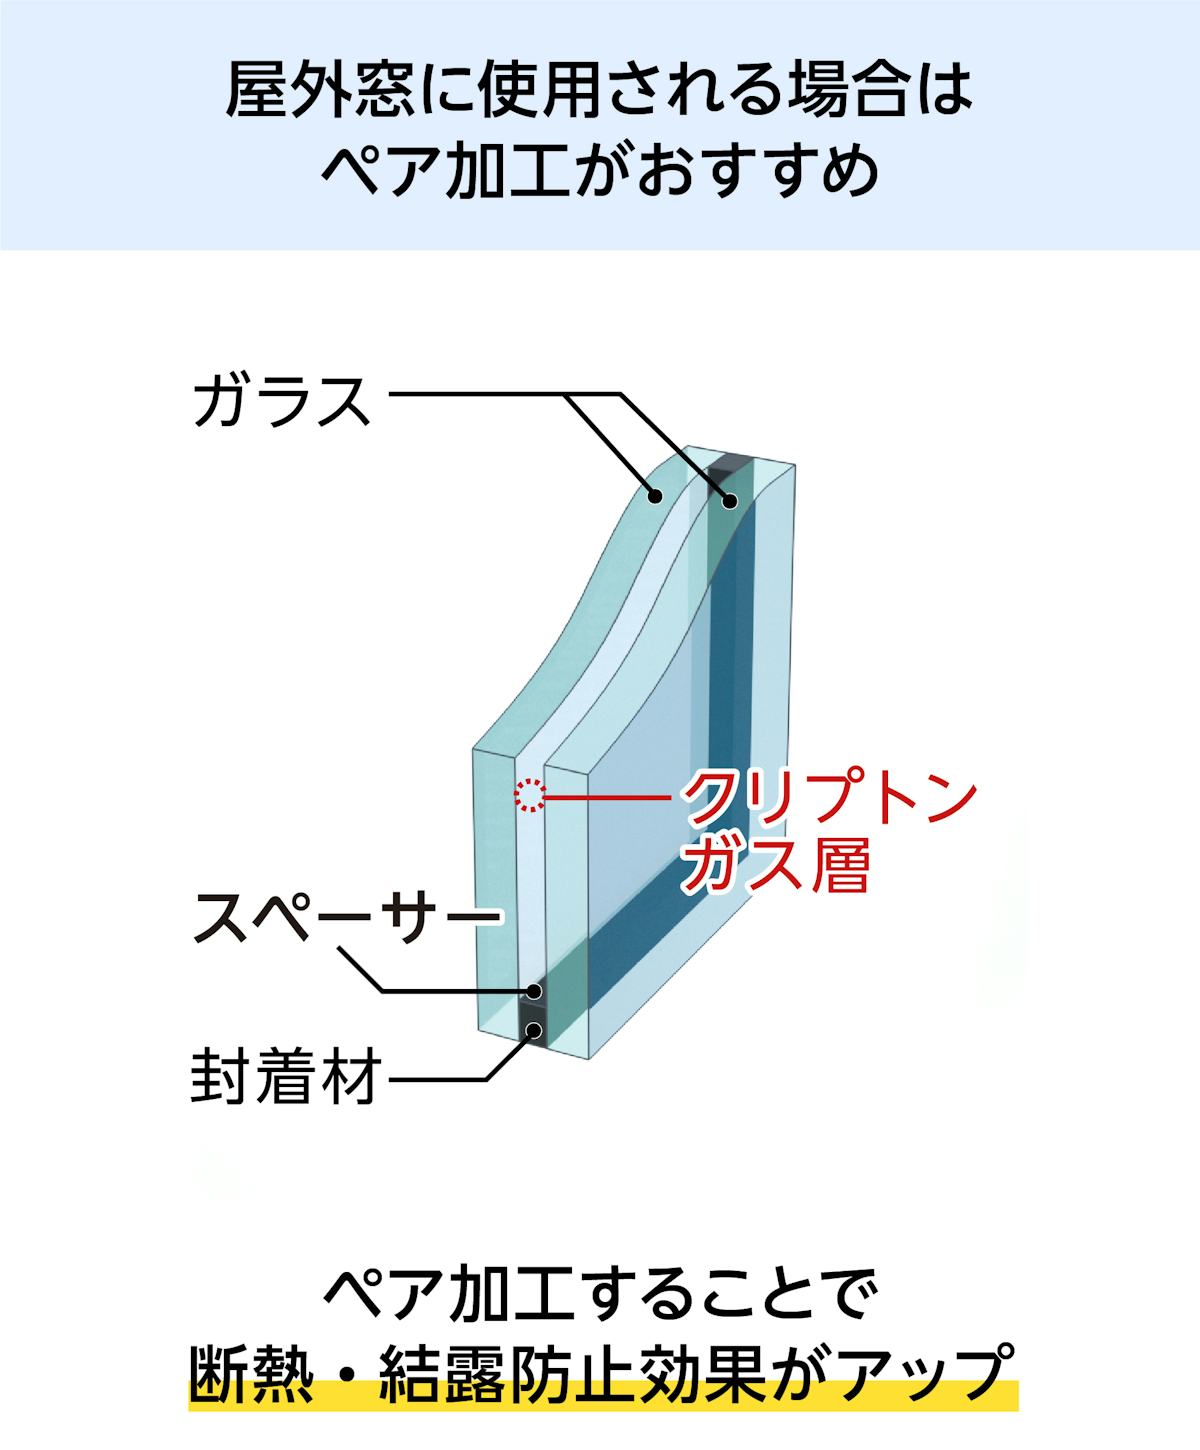 昭和レトロガラス - 屋外窓に使用する場合はペア加工推奨